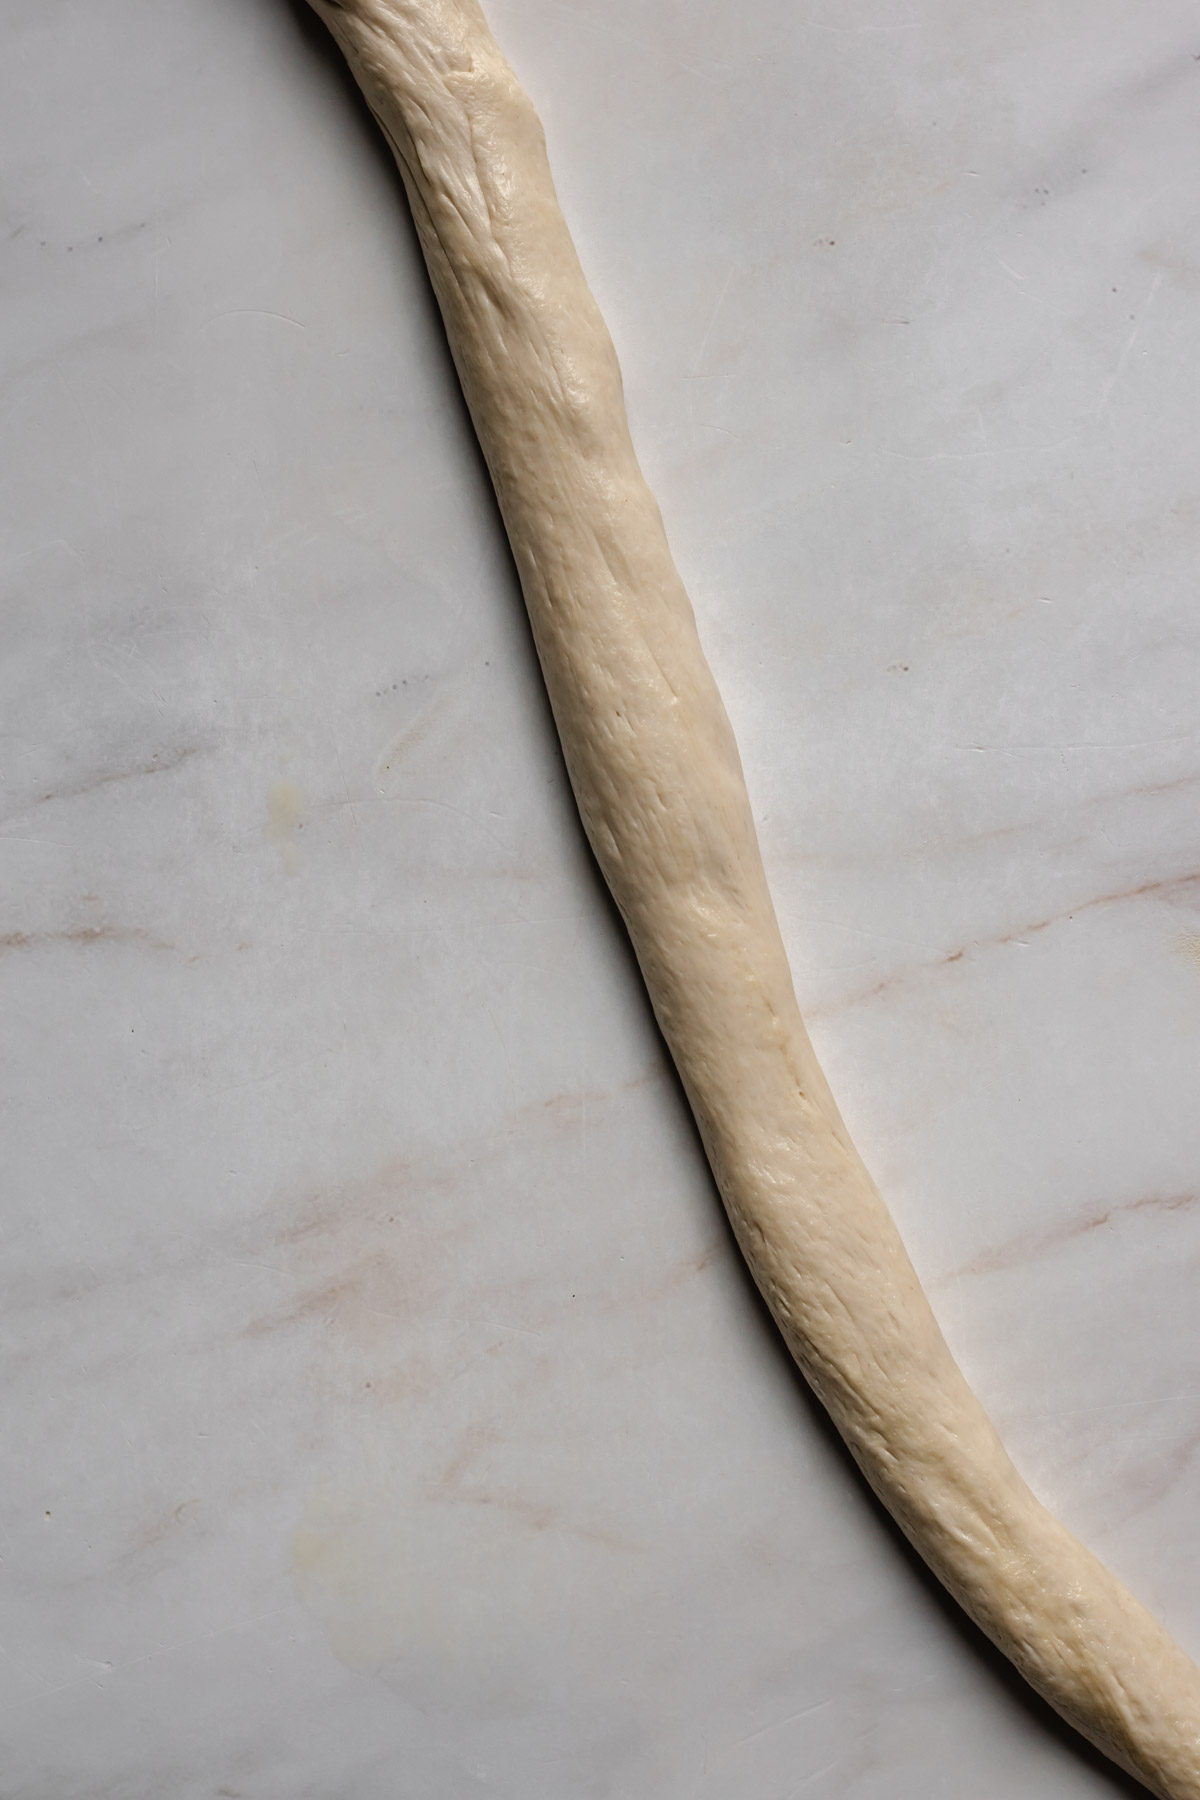 A 1-inch log of soft pretzel dough.